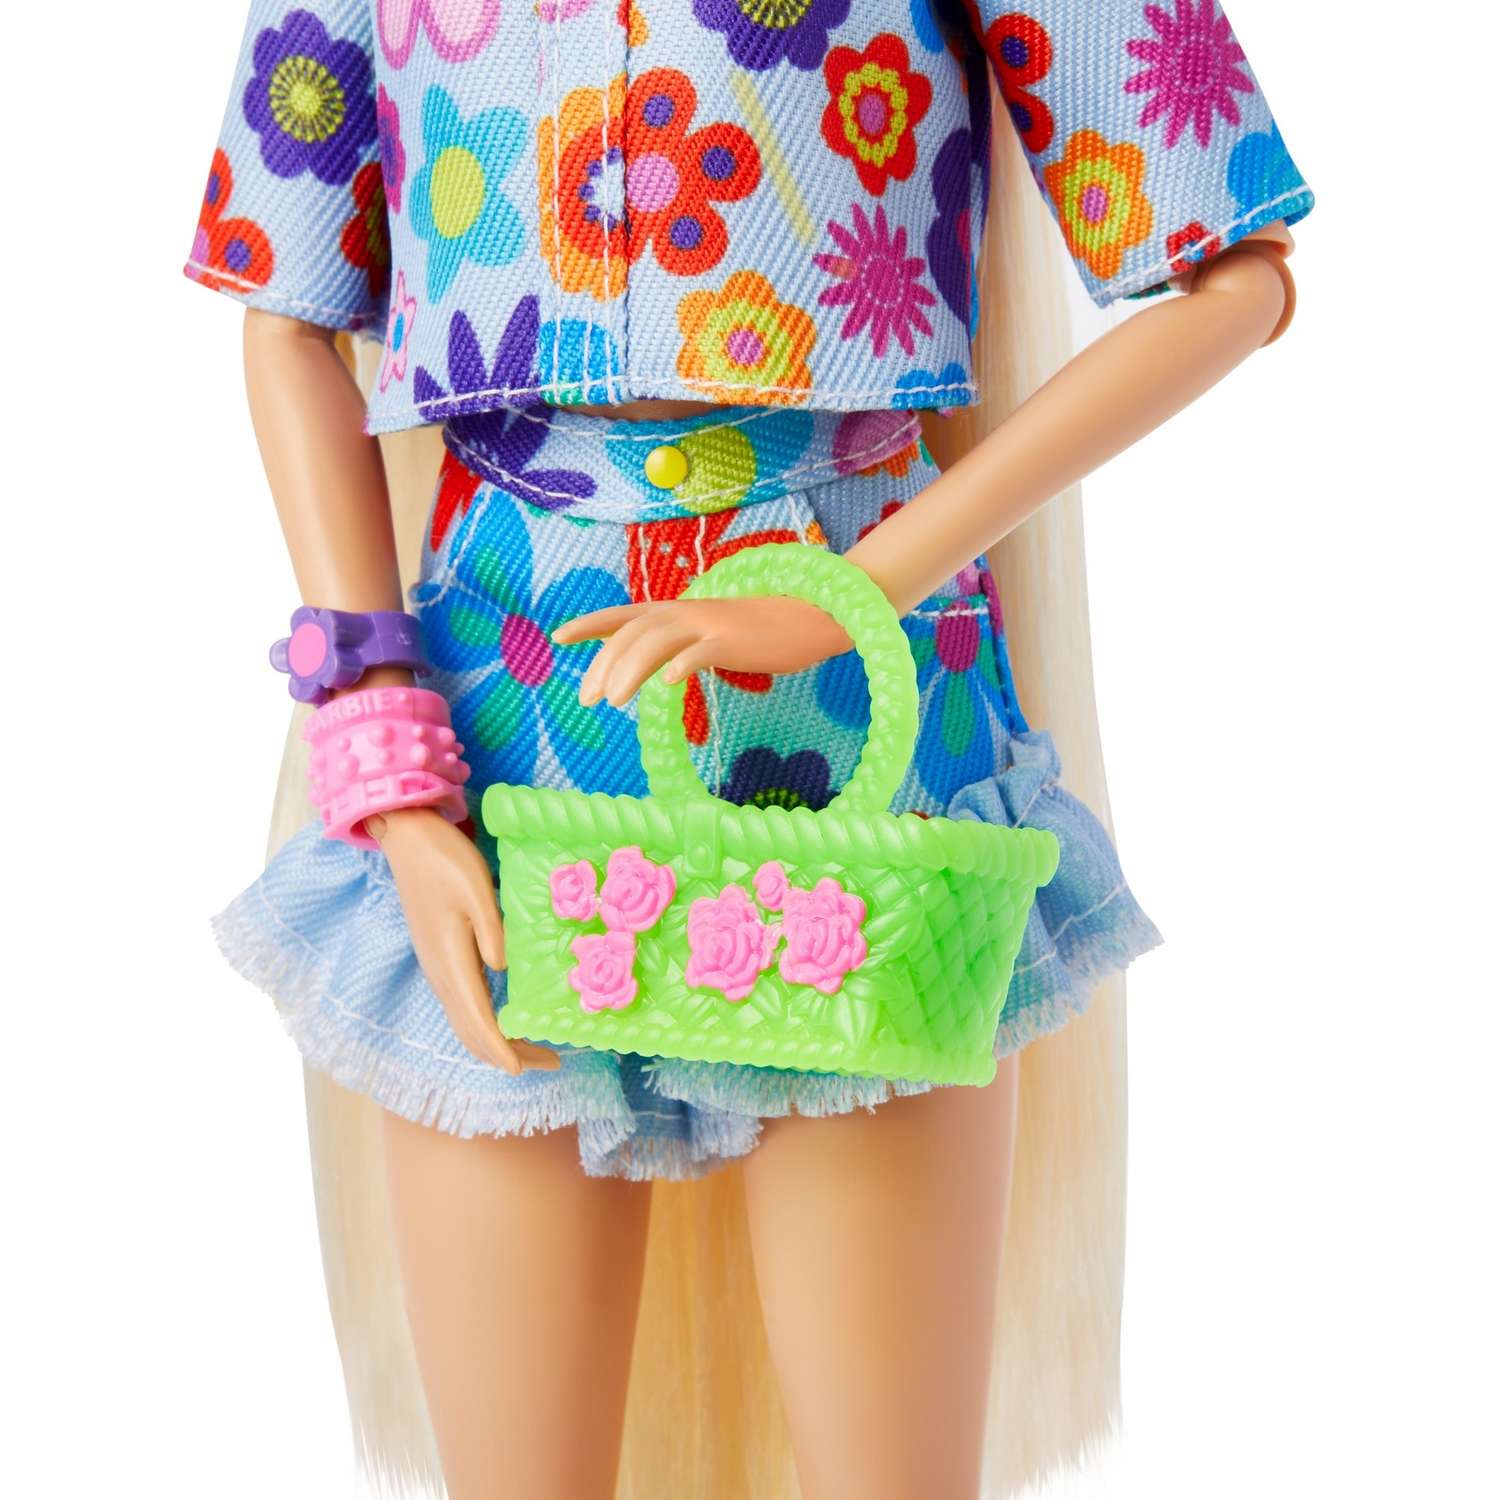 Кукла Barbie Экстра в одежде с цветочным принтом HDJ45 HDJ45 - фото 8